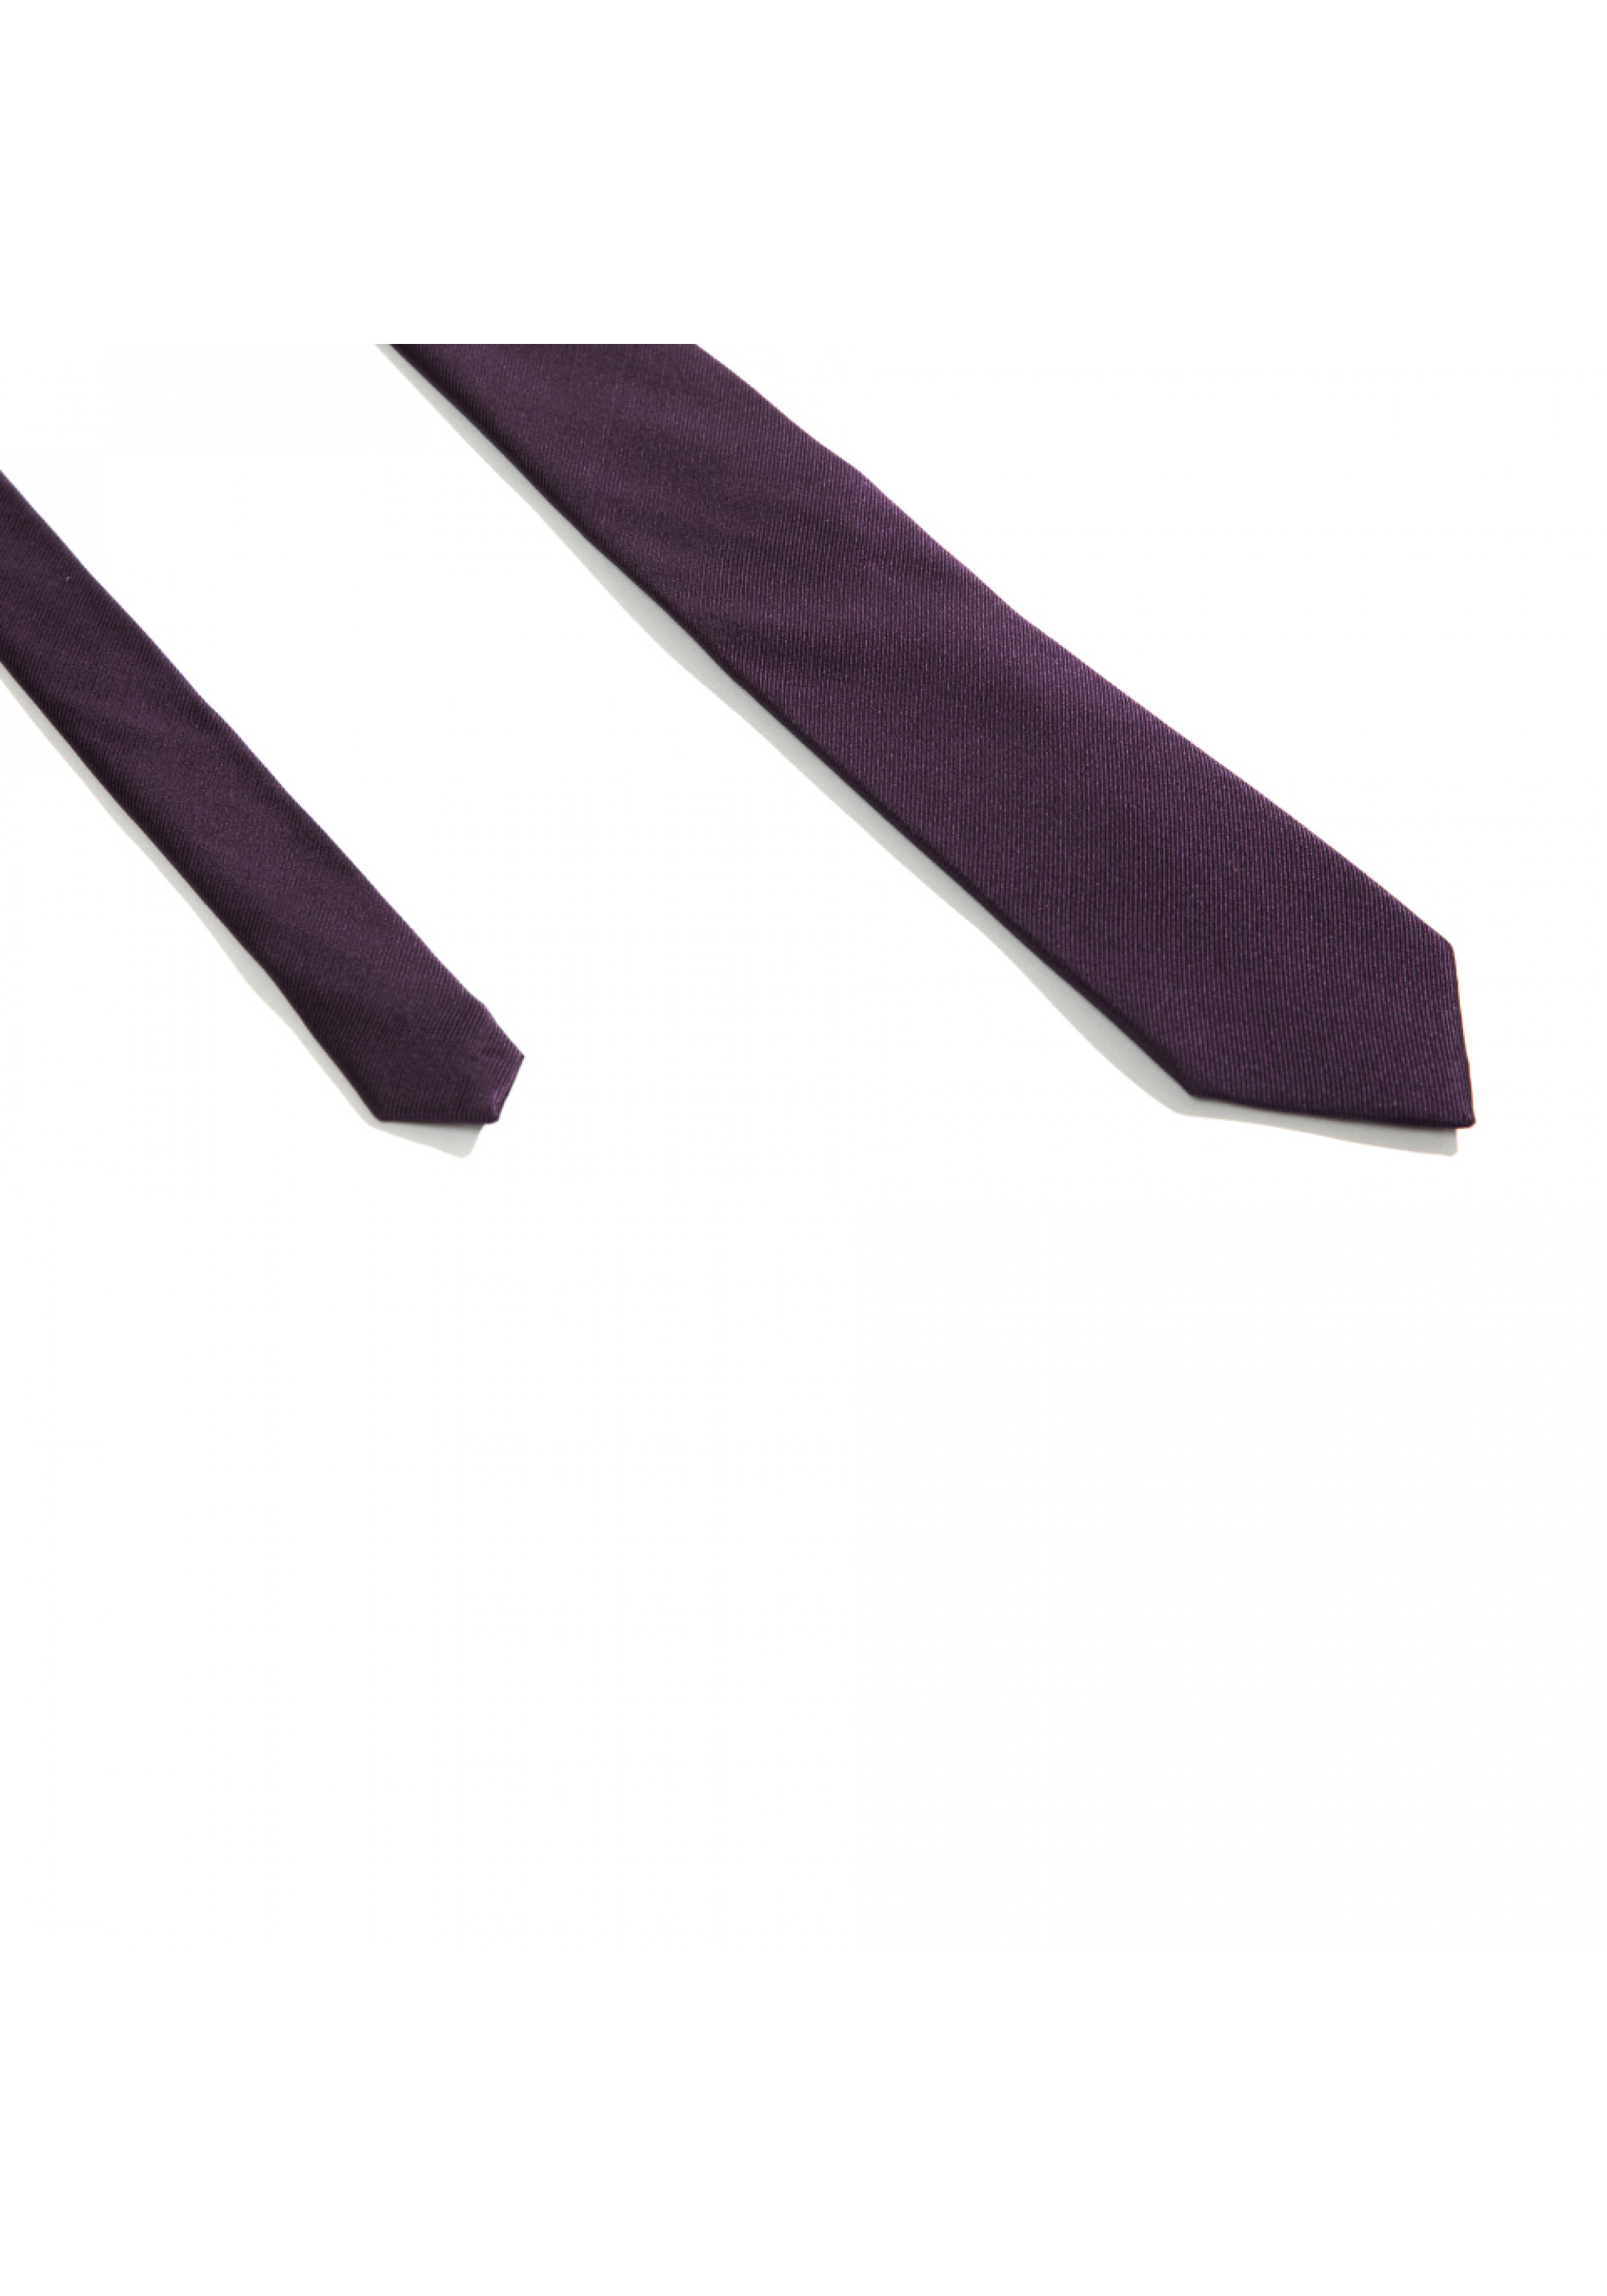 Cravata Violet Plum